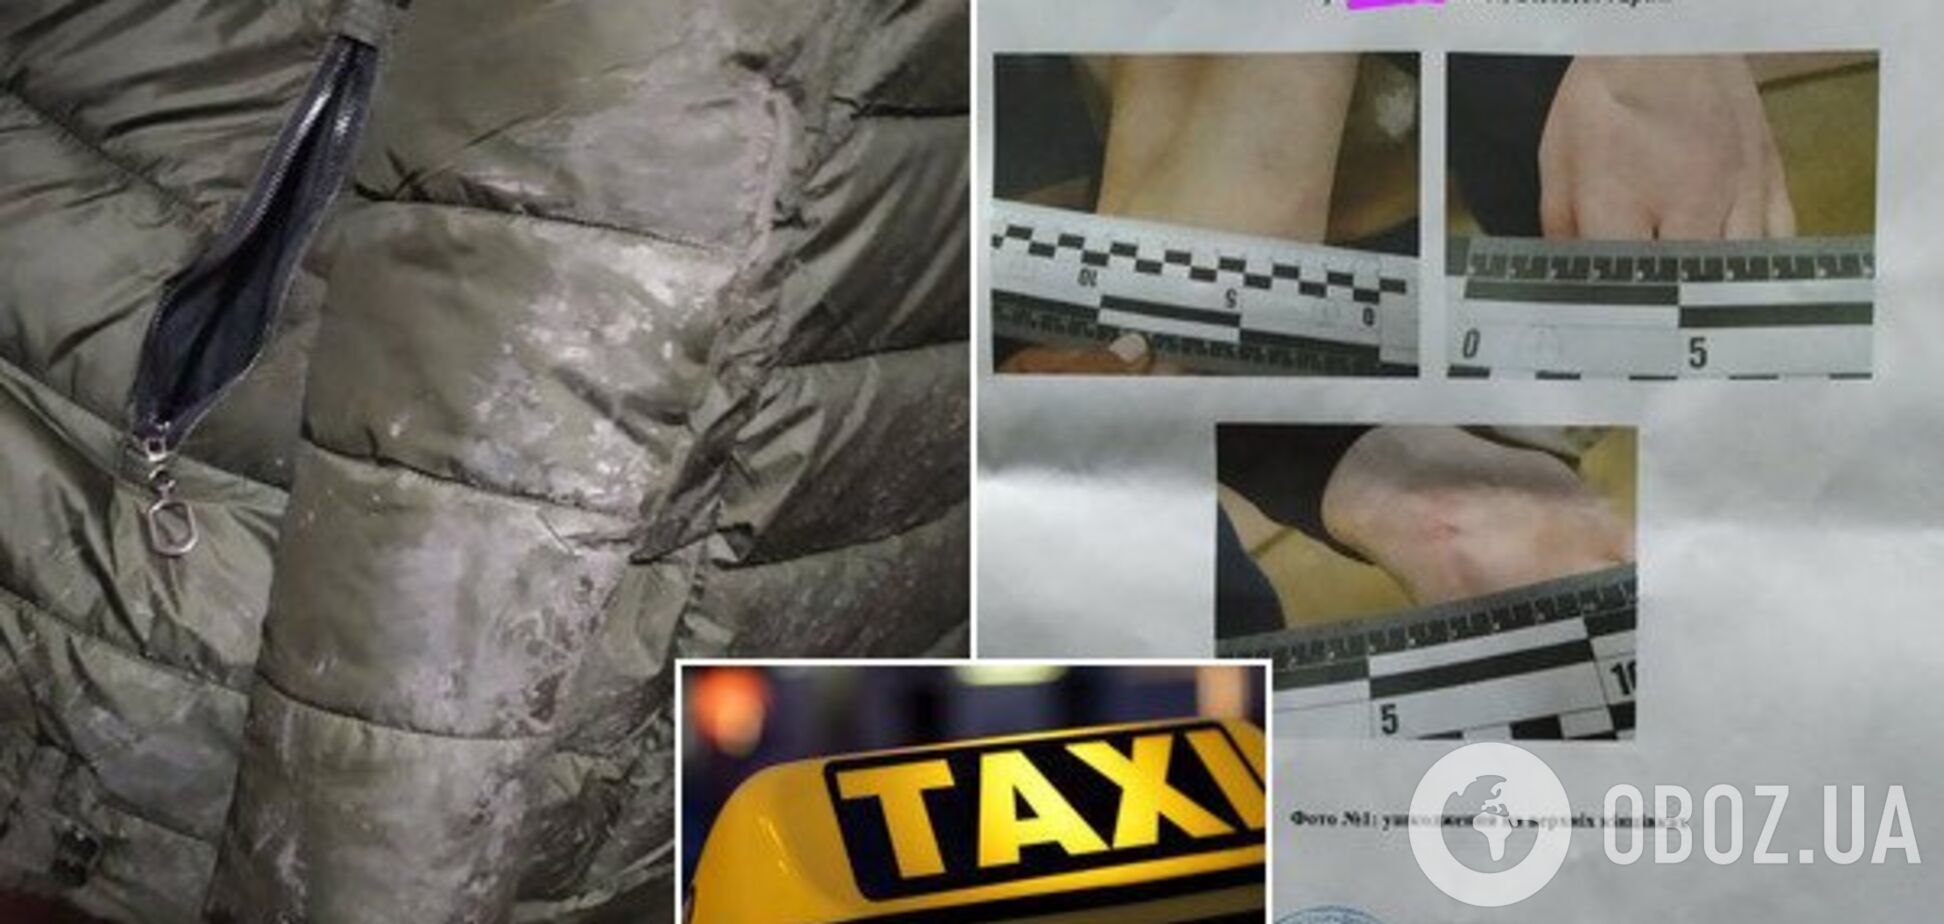 Викинув із машини й бив ногами: у Дніпрі таксист жорстоко розправився з дівчиною